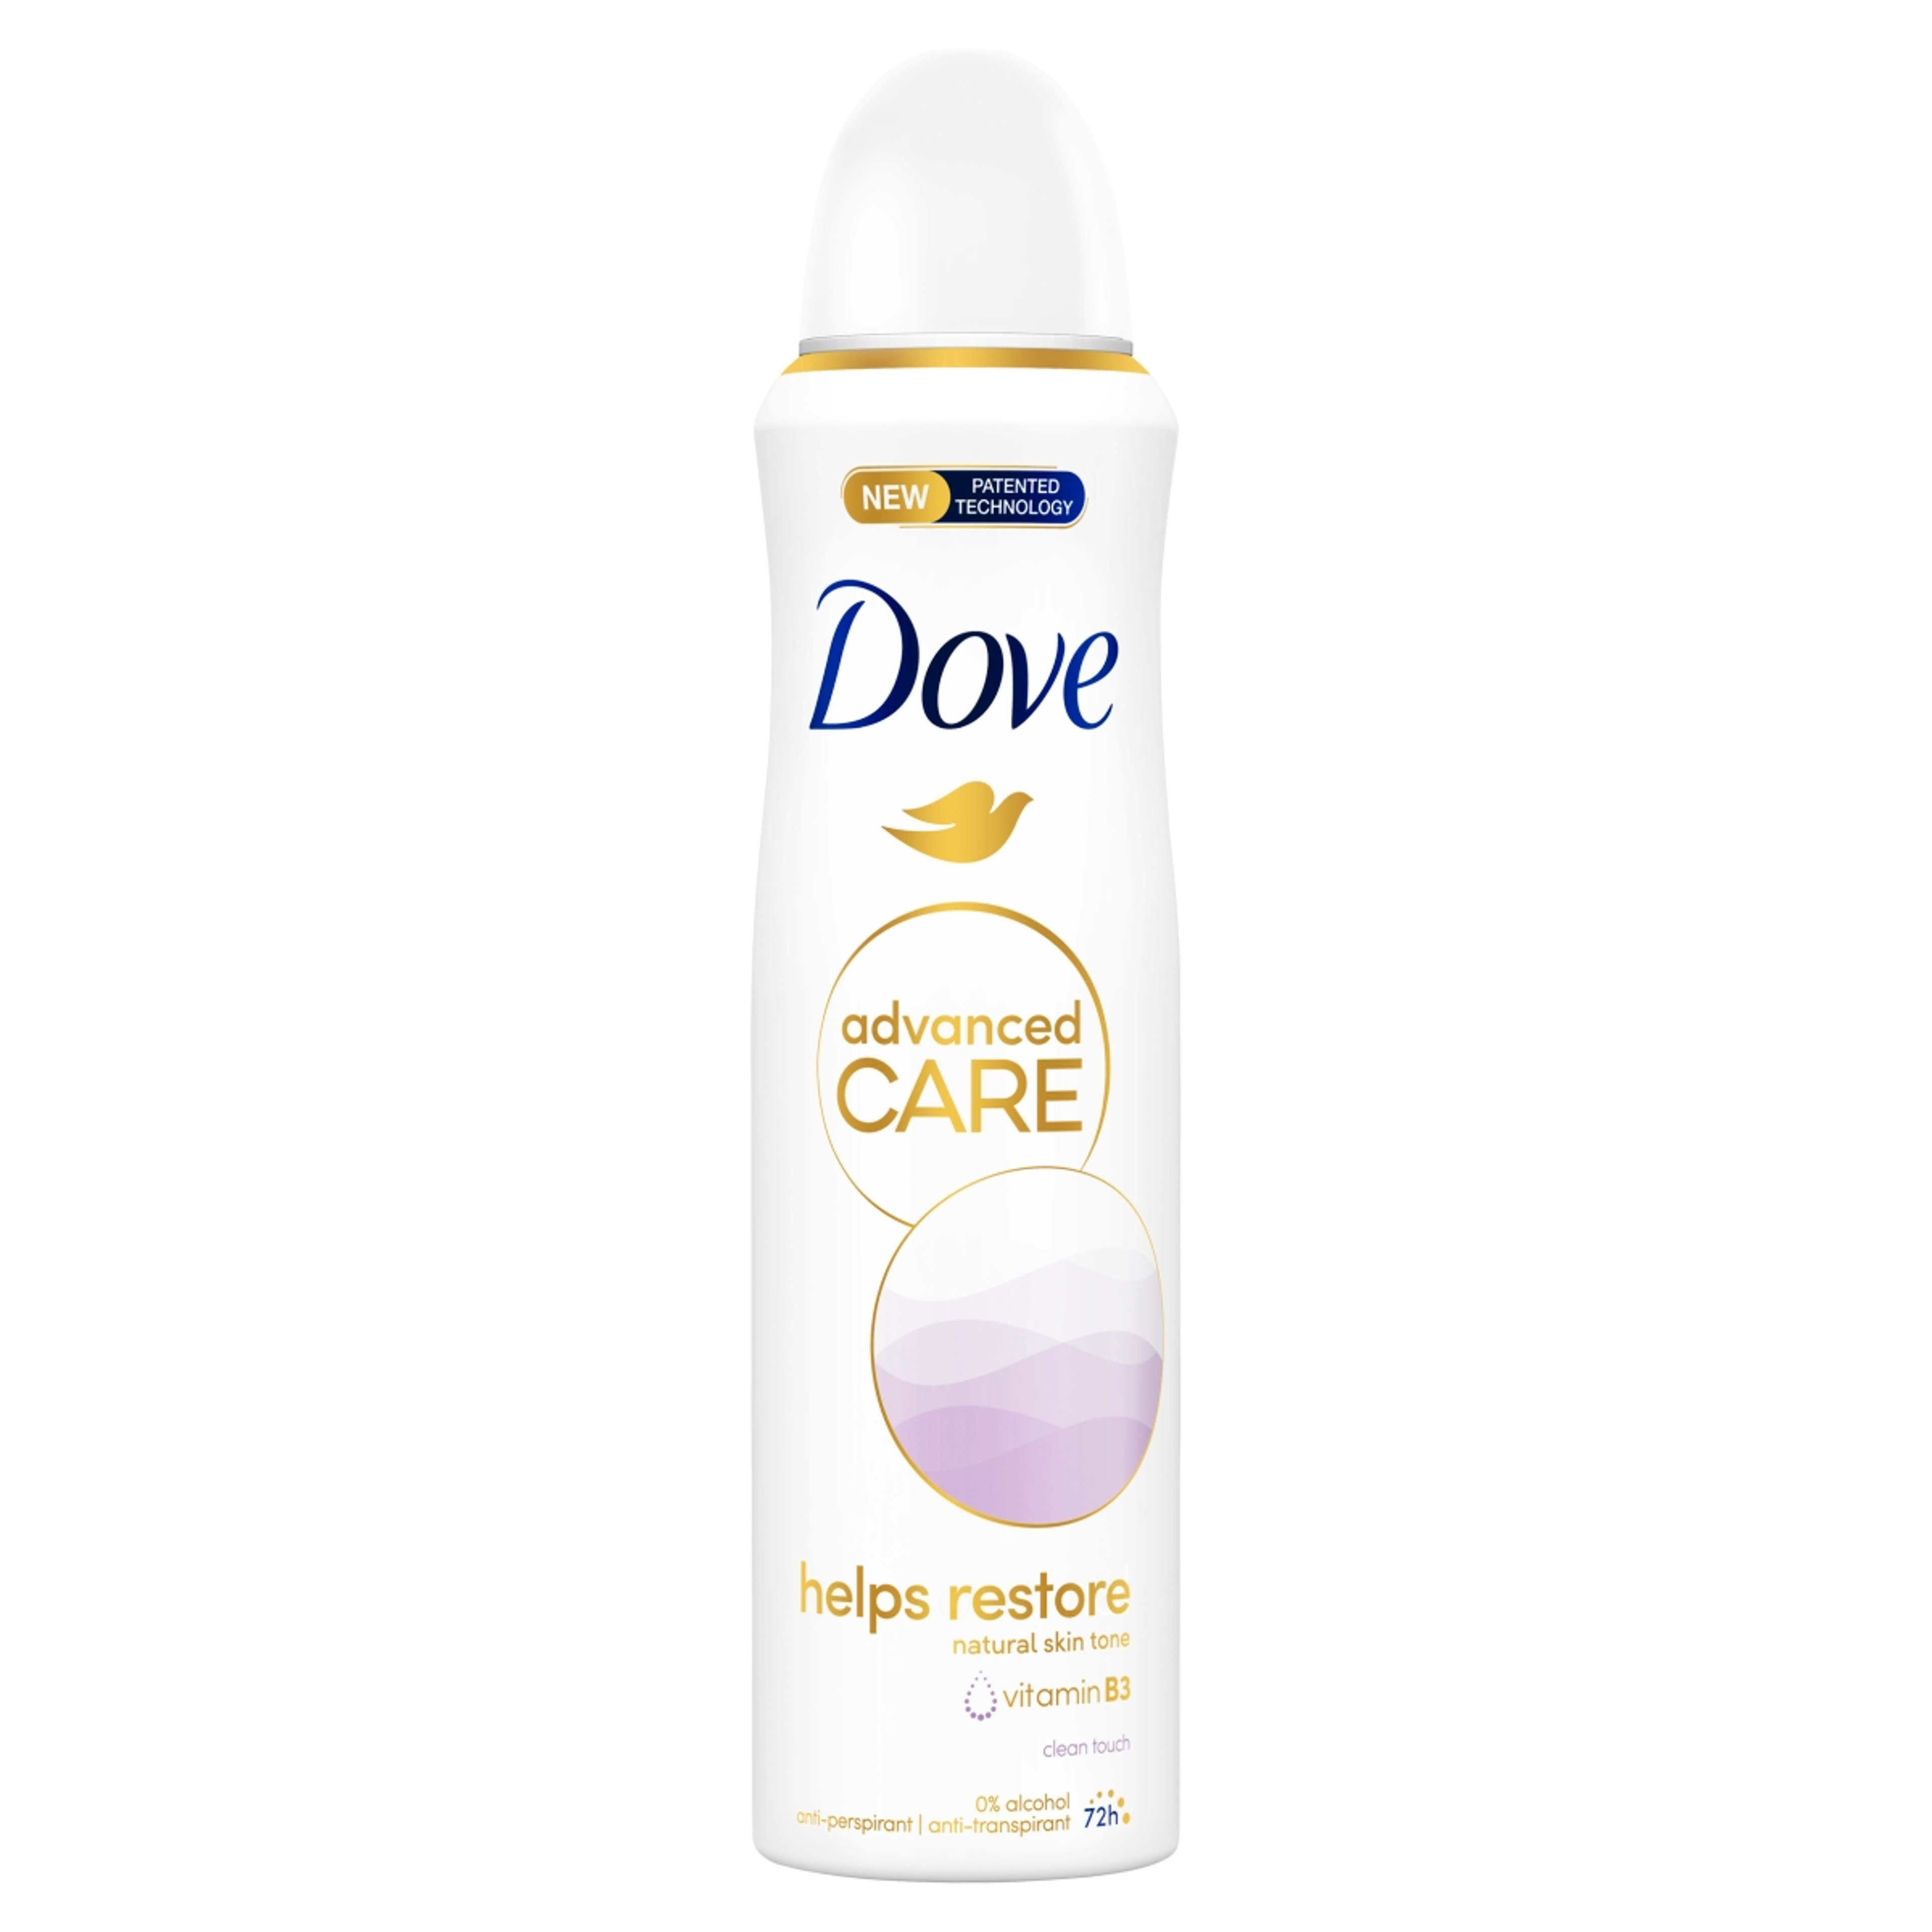 Dove Advanced Care Clean Touch dezodor spray - 150 ml